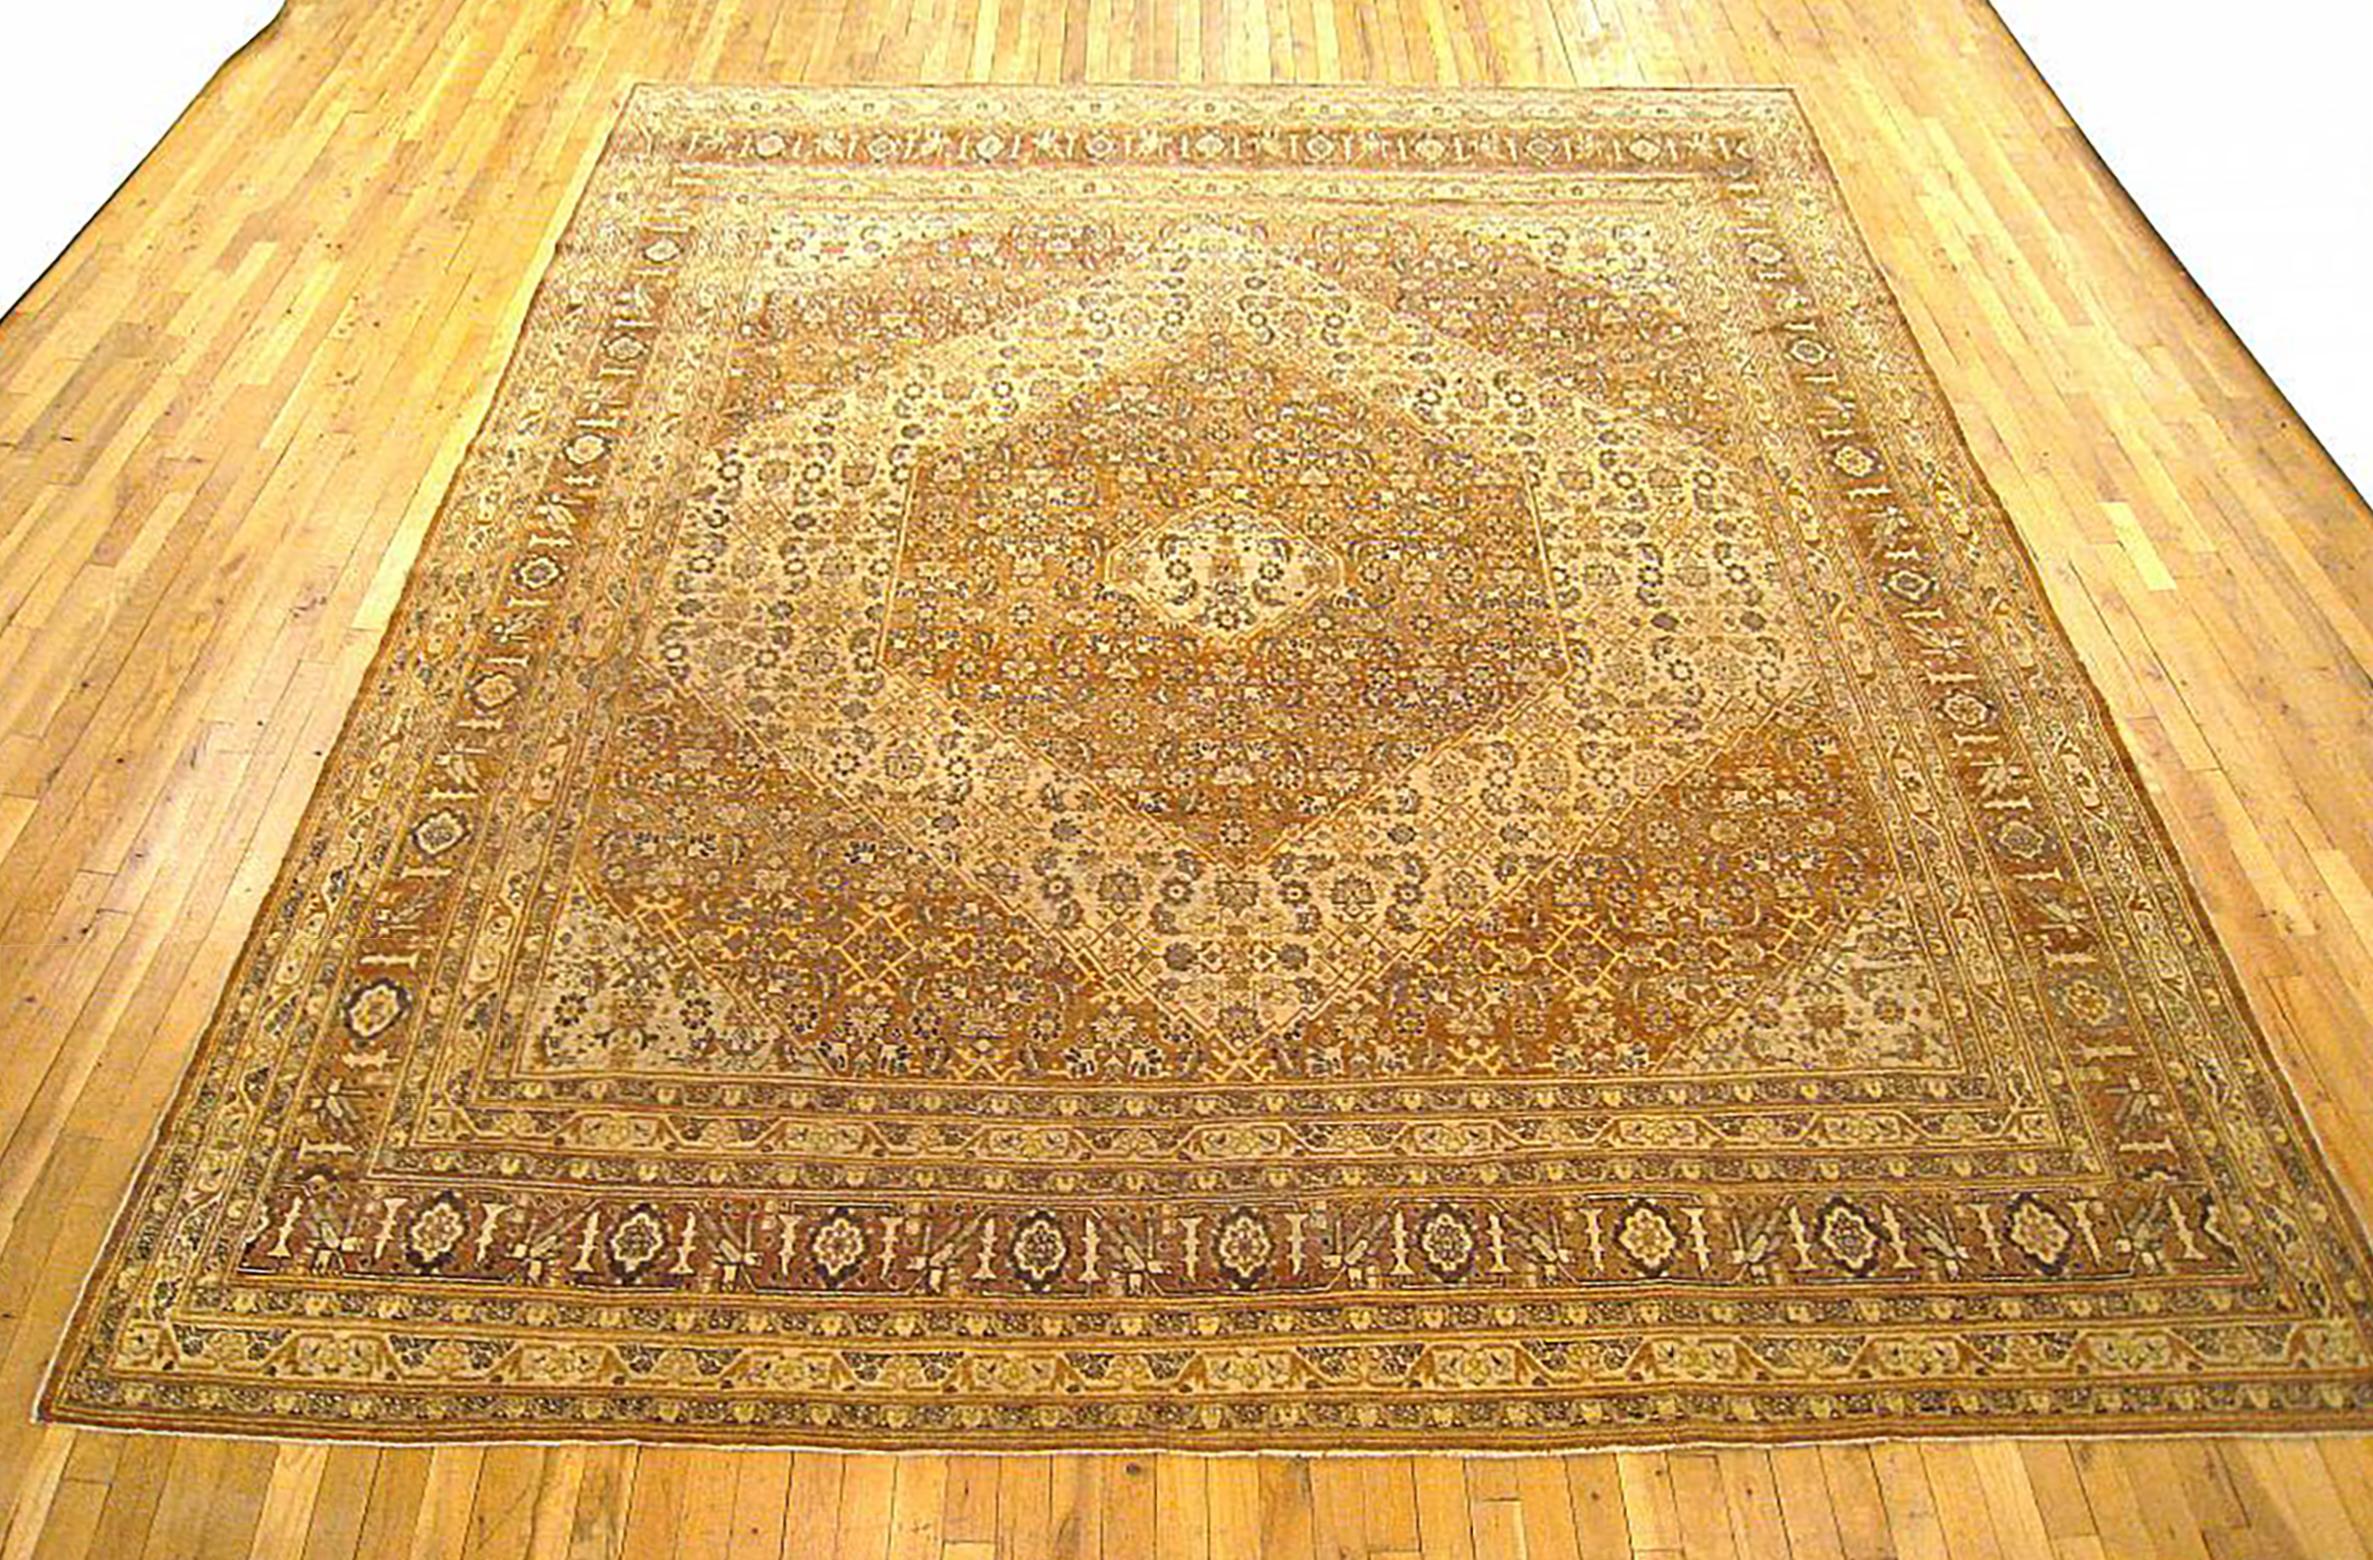 Antique Persian Tabriz  Oriental Carpet, circa 1900, Room Sized

An antique Persian Tabriz oriental carpet, circa 1900. Size: 12'2